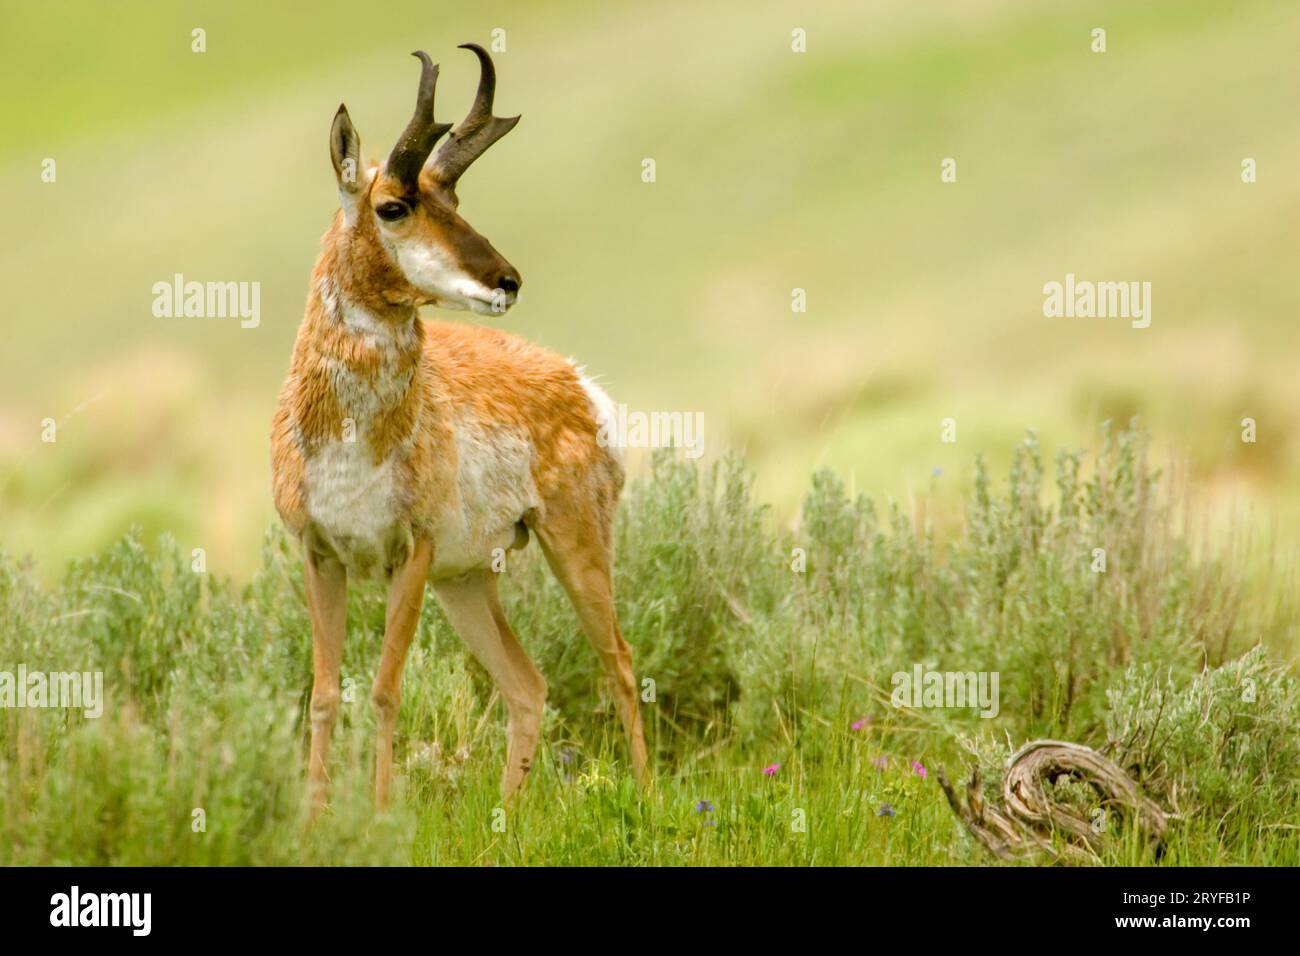 Parc national de Yellowstone, Wyoming, États-Unis. Mâle pronghorn shaggy ou antilope américaine (Antilocapra americana) debout. Banque D'Images